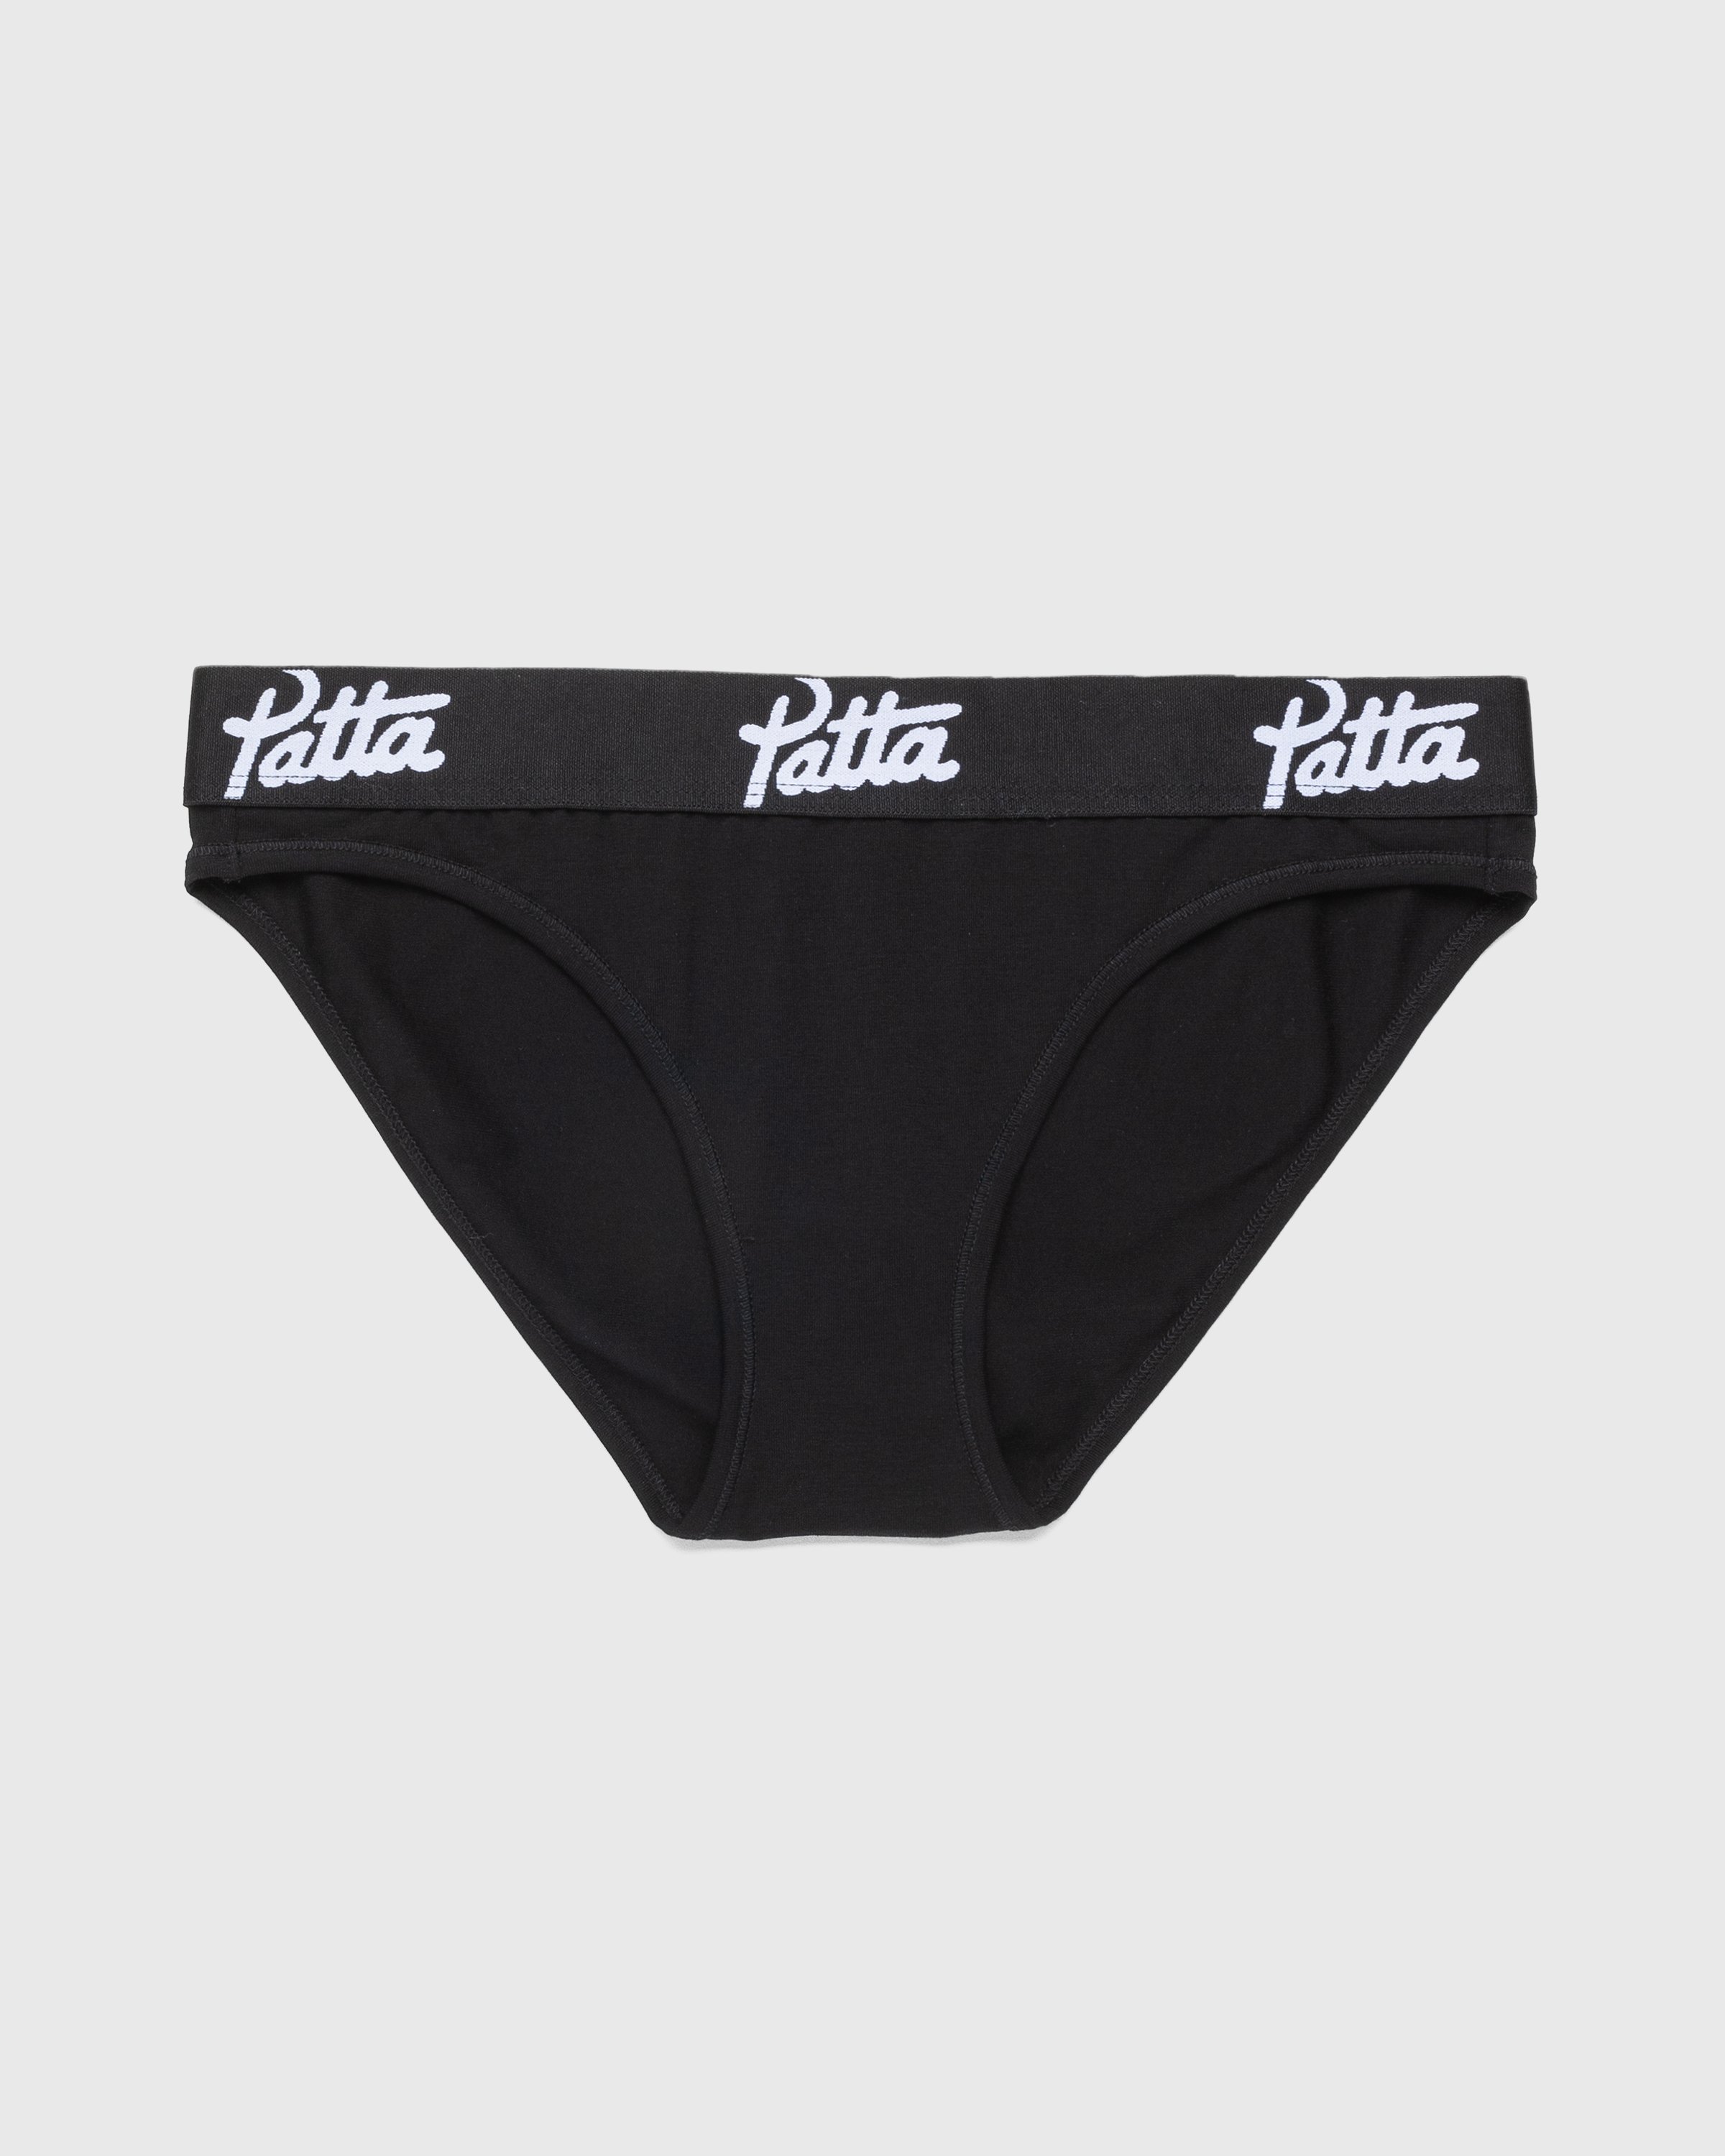 Patta - Women’s Underwear Brief Black - Clothing - Black - Image 1